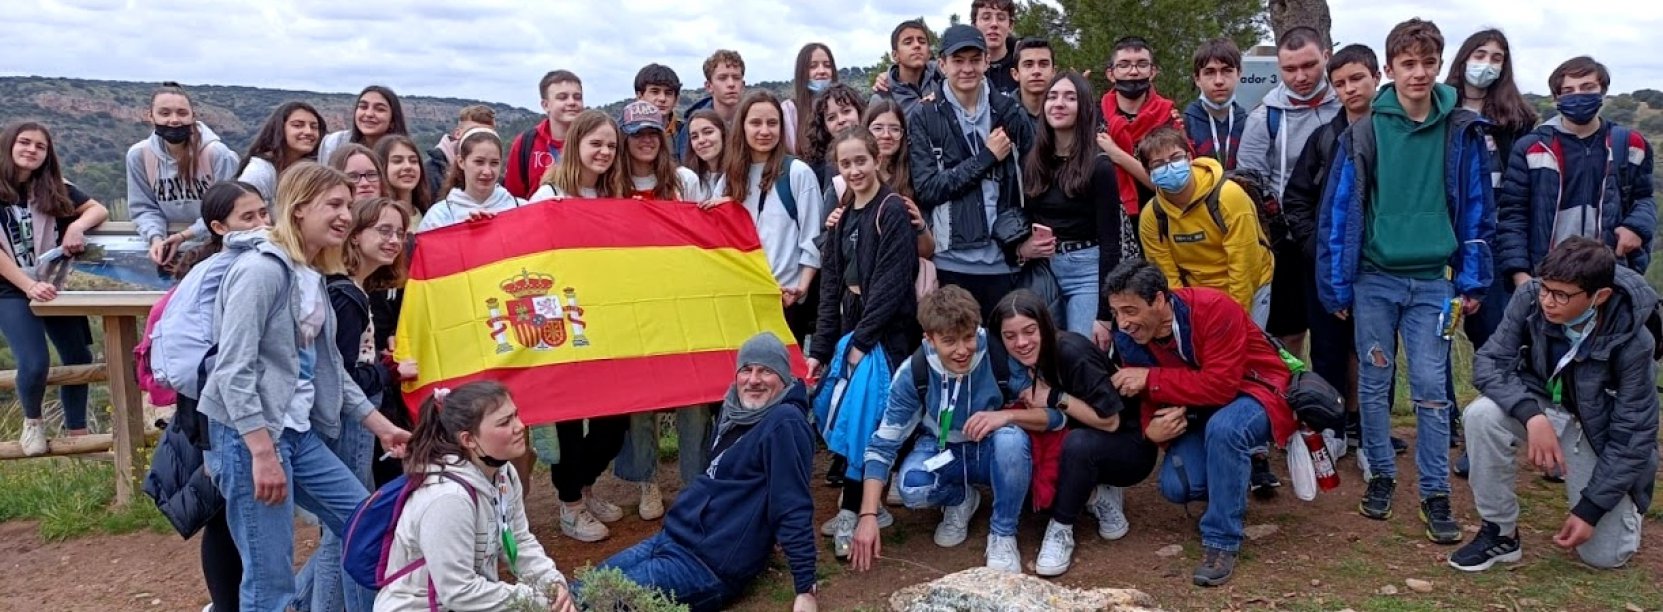 Grupowe zdjęcie kilkunastu osób w górach i flaga Hiszpanii